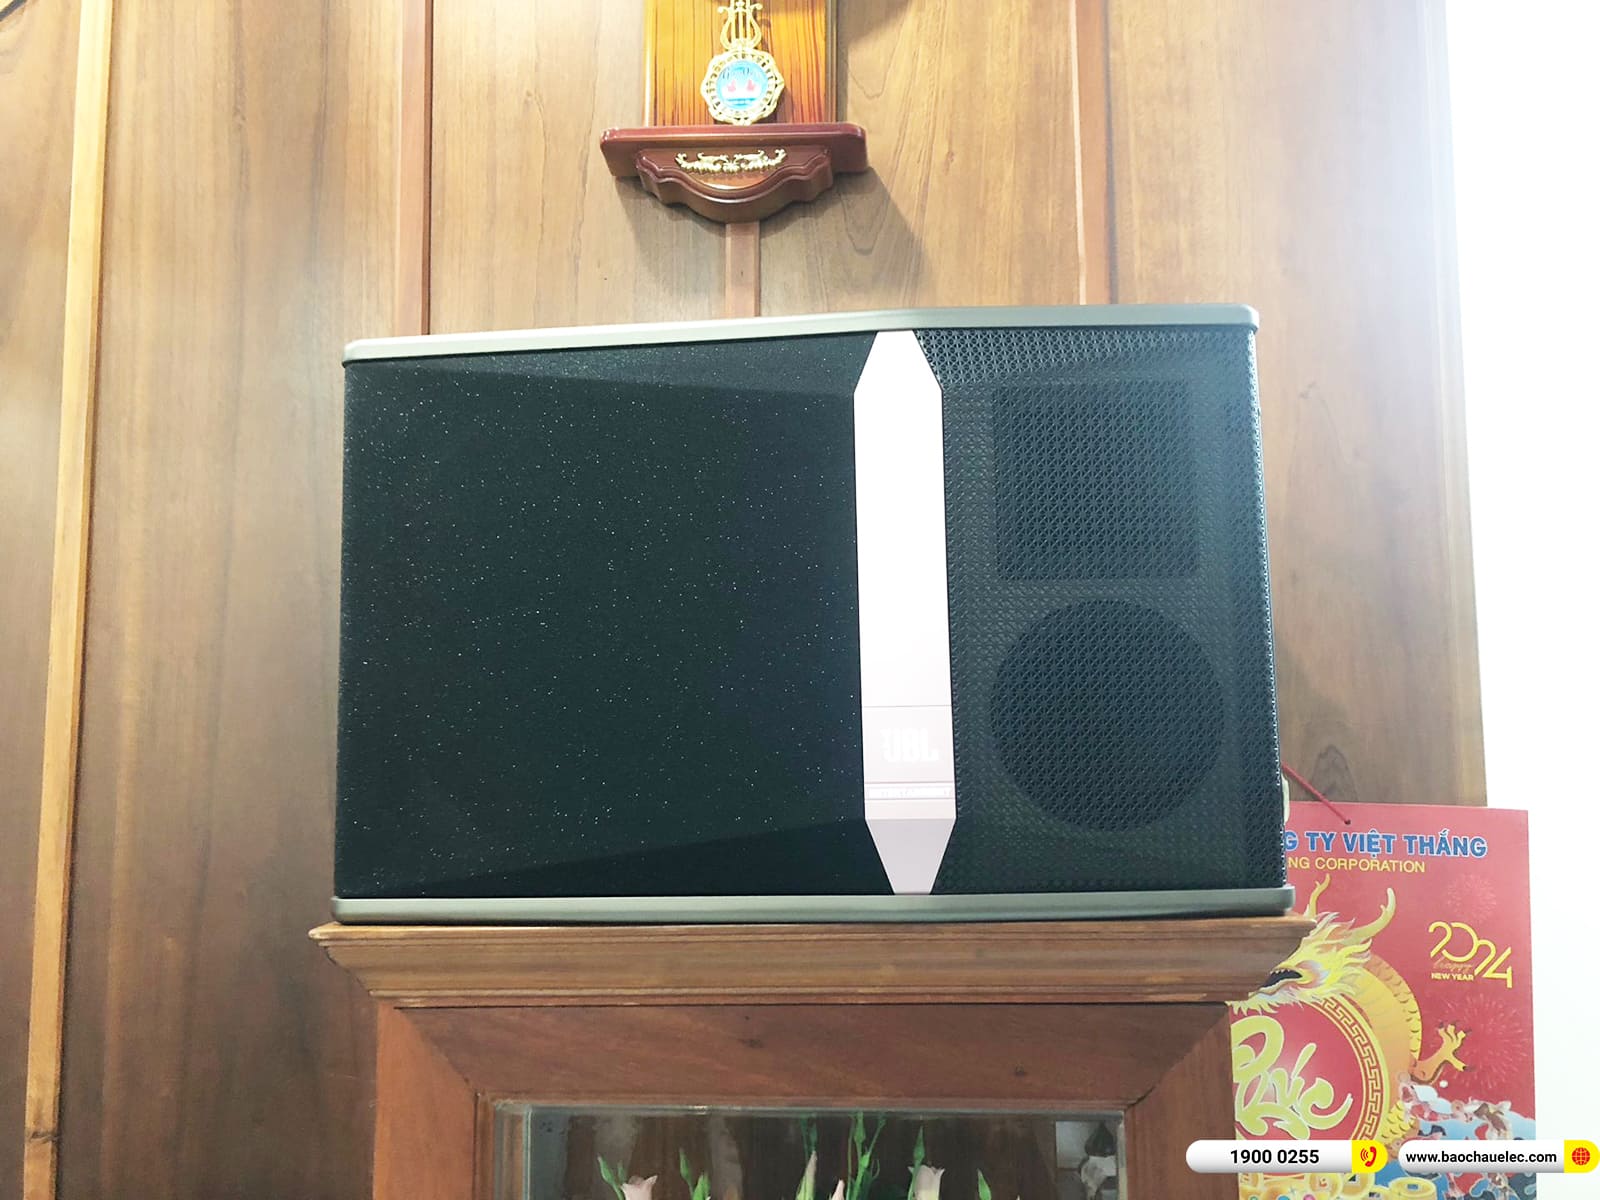 Lắp đặt dàn karaoke JBL hơn 33tr cho anh Sang ở Bình Dương